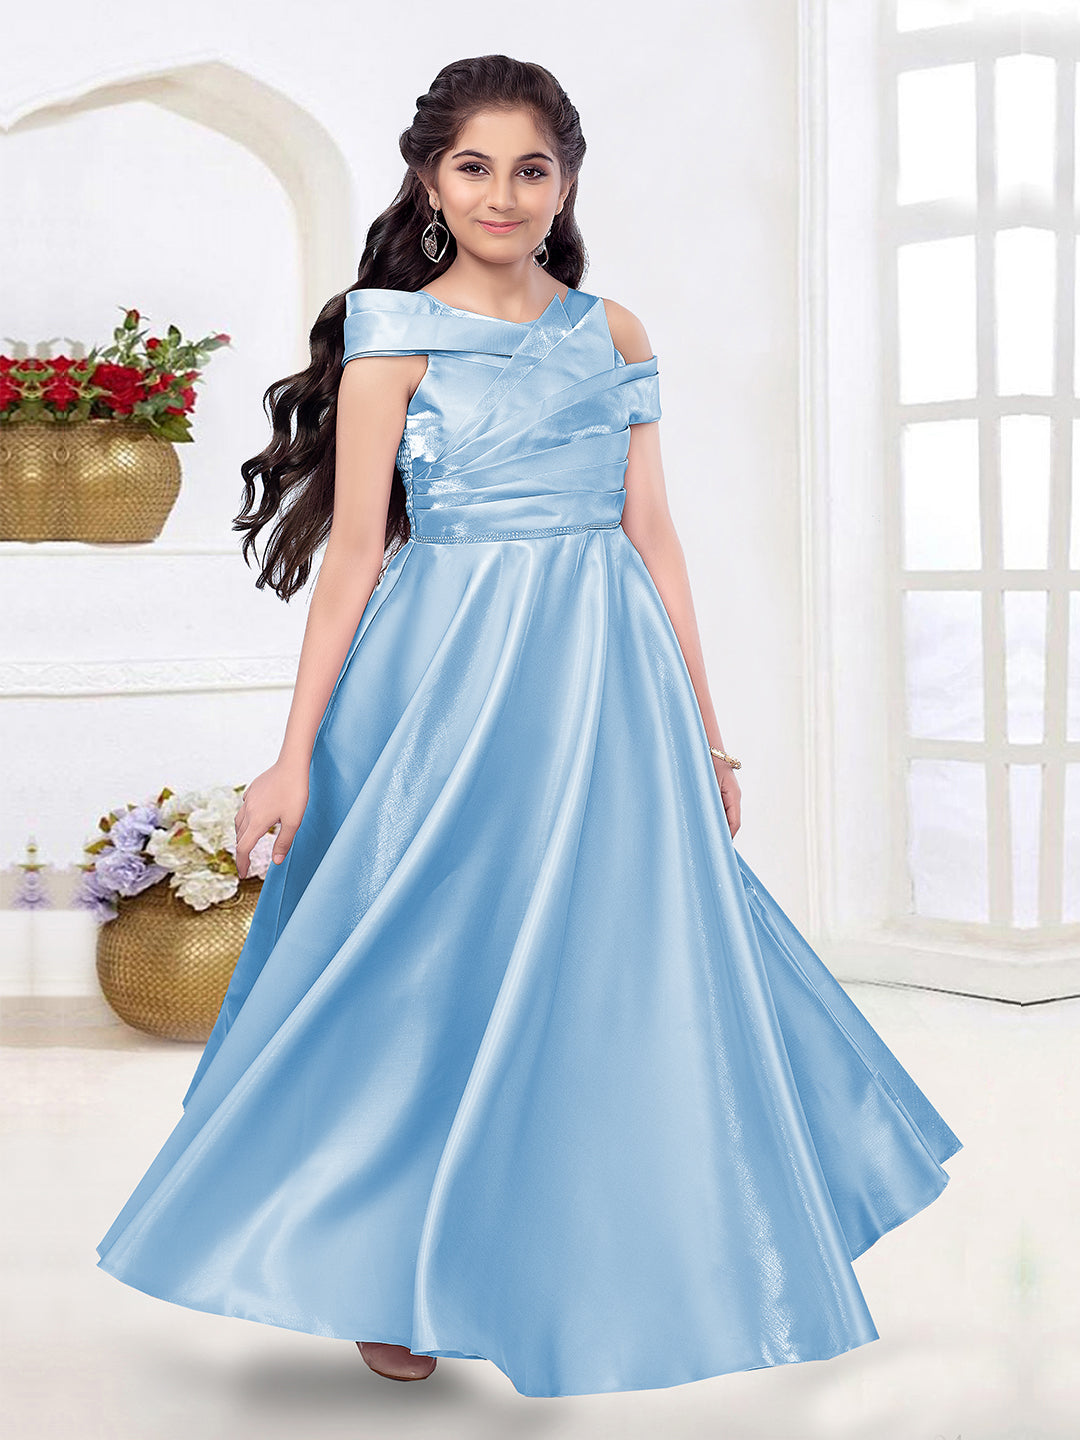 Buy Blueberry Ruffled Gown Online for Little Girls - ForeverKidz